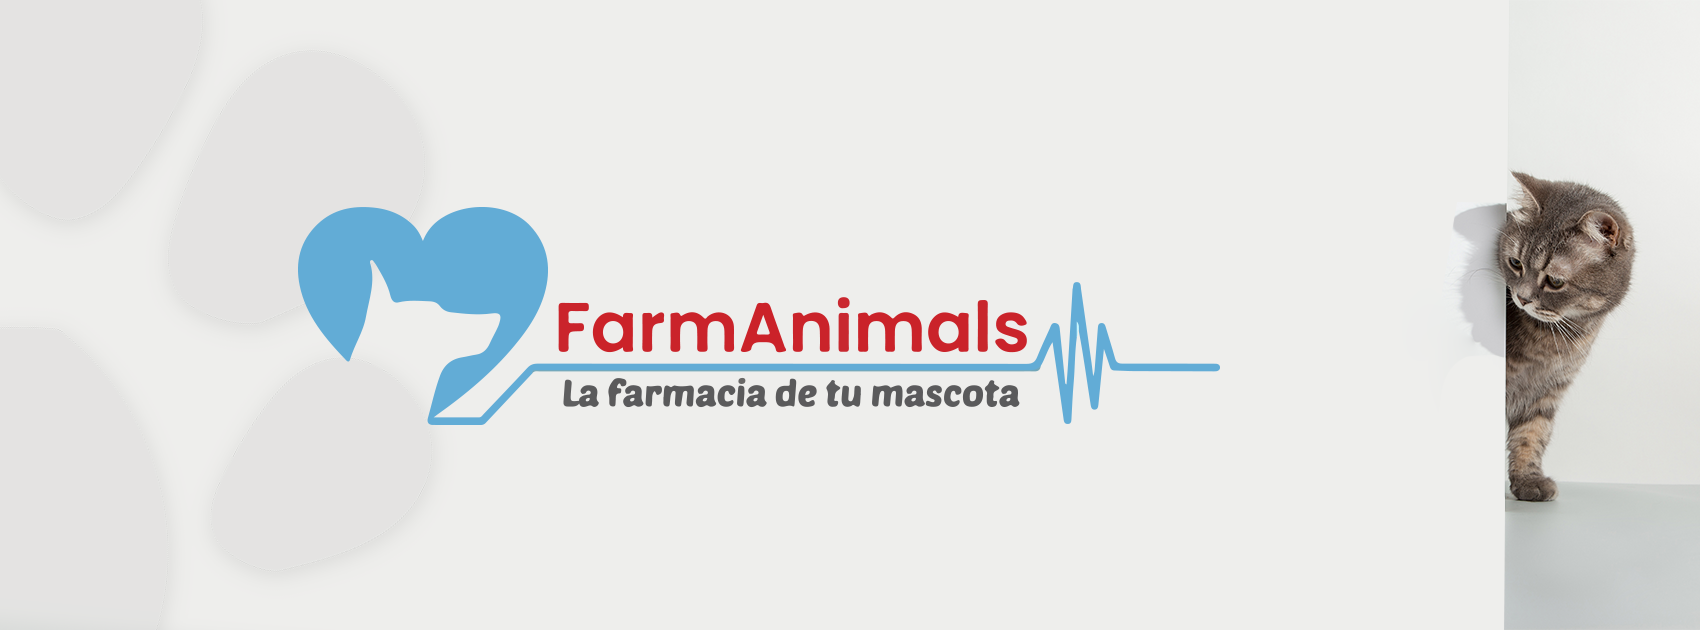 Conoce FarmAnimals, la red de farmacias para mascotas que triunfa en el sector Franquicias